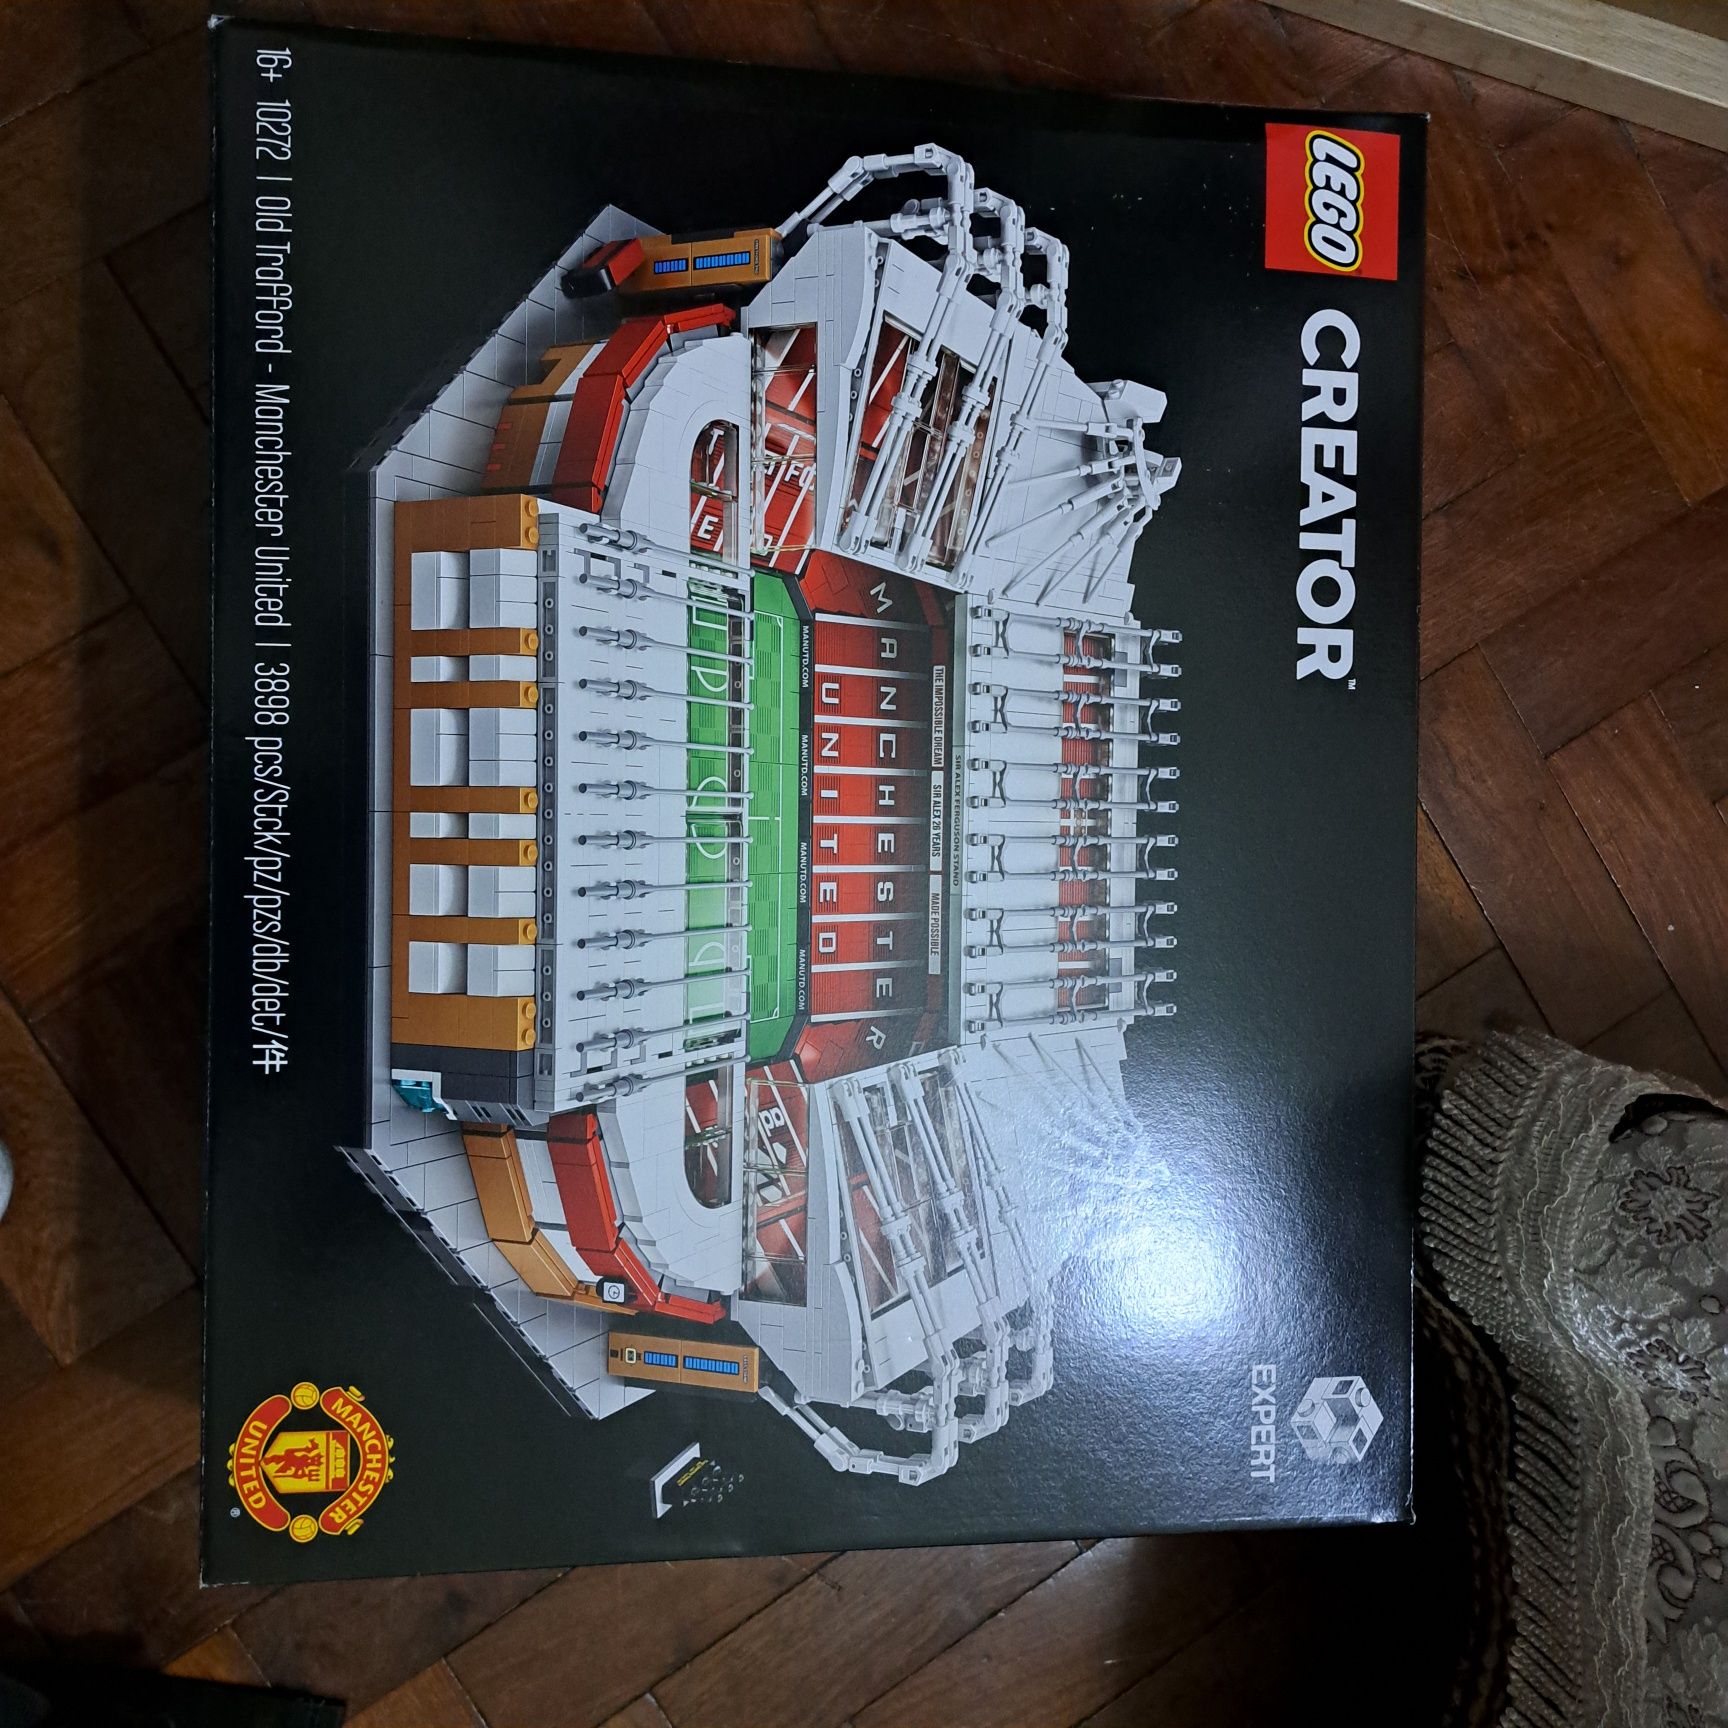 Lego estadio Manchester united